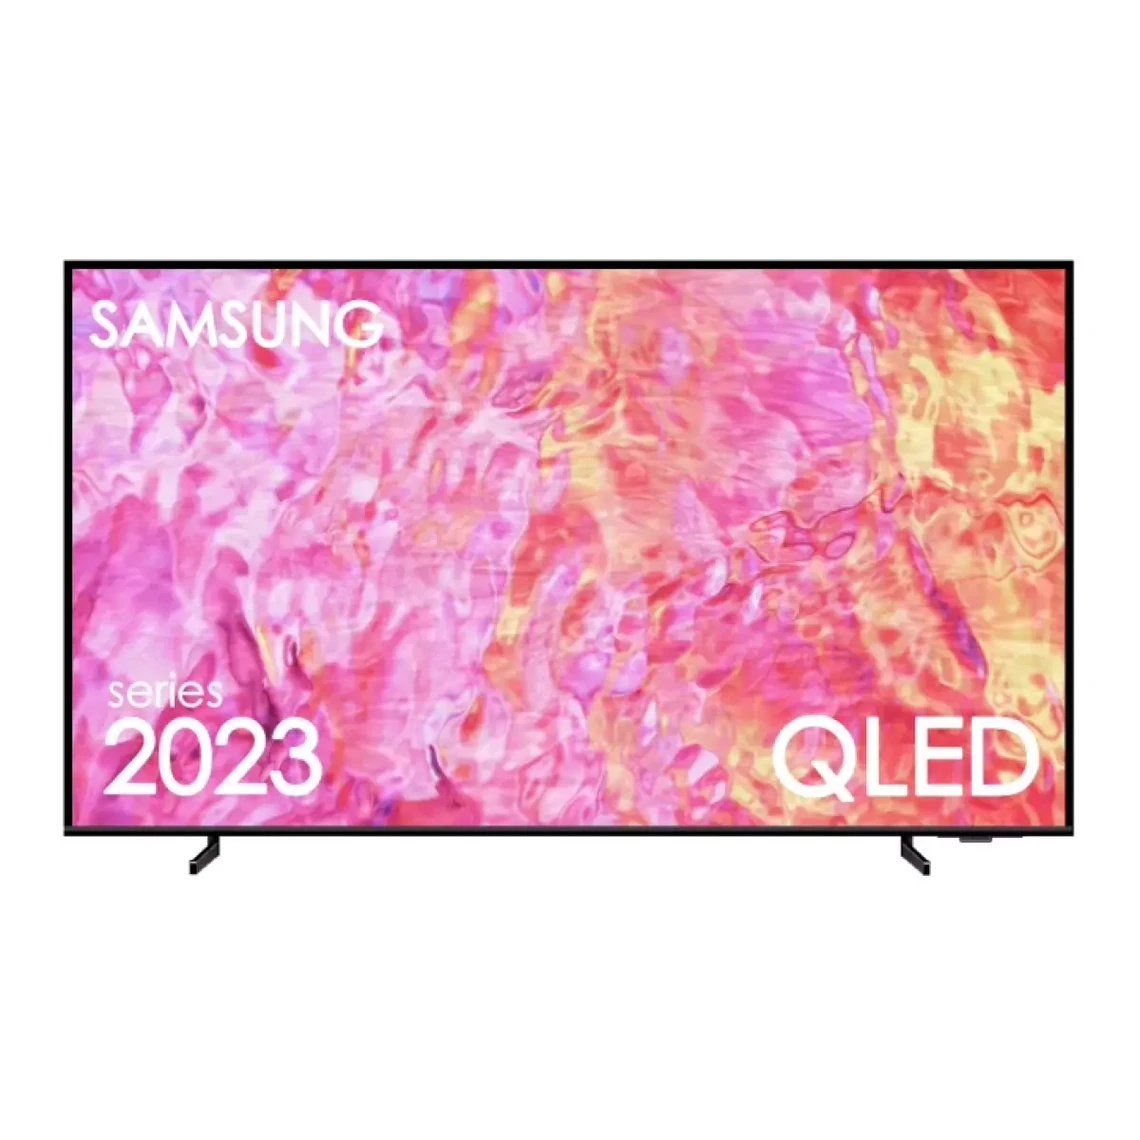 TV QLED 4k 65 165cm - 65Q60C 2023 - Samsung Revivez l'expérience cinématographique à domicile avec cette TV QLED 4K 65 pouces de Samsung. Offrant une résolution 4K UHD et la technologie QLED pour des images aux détails précis, des couleurs vives et un contraste accru. Dotée d'un indice de réparabilité de 8.2, cette télévision est également durable et respectueuse de l'environnement avec sa classe d'efficacité énergétique F. De plus, elle est pourvue d'une dalle LED non incurvée pour un visionnage confortable depuis n’importe quel point de la pièce. Smart TV Samsung avec Tizen et compatible Alexa Laissez-vous surprendre par le système d’exploitation TV Tizen que propose Samsung pour une utilisation facile, intuitive et réactive. Fonction Smart TV intégrée, vous pourrez naviguer sur Internet, consulter les réseaux sociaux et profiter d'un large choix de divertissement en streaming. De plus, ce télévision est compatible avec Amazon Alexa permettant des commandes vocales pratiques pour naviguer à travers vos émissions et films préférés. Design et spécifications techniques La TV QLED de Samsung présente un design élégant et contemporain qui s'adaptera parfaitement à tous les styles d'intérieur. Elle mesure 165cm avec une hauteur de 83.1 cm, une largeur de 145 cm et une profondeur de 27.4 cm, pesant 21.3 kg. Elle est aussi équipée de 3 entrées HDMI, pour y connecter facilement vos dispositifs externes comme les consoles de jeux ou les lecteurs Blu-Ray. L'appareil est neuf, garantissant une performance optimale et une satisfaction sans faille.Écran 65 4K UHD - Dalle TFT 50Hz - Smart TV avec Tizen - WiFi - Bluetooth - HDR 10+ - Modèle UE